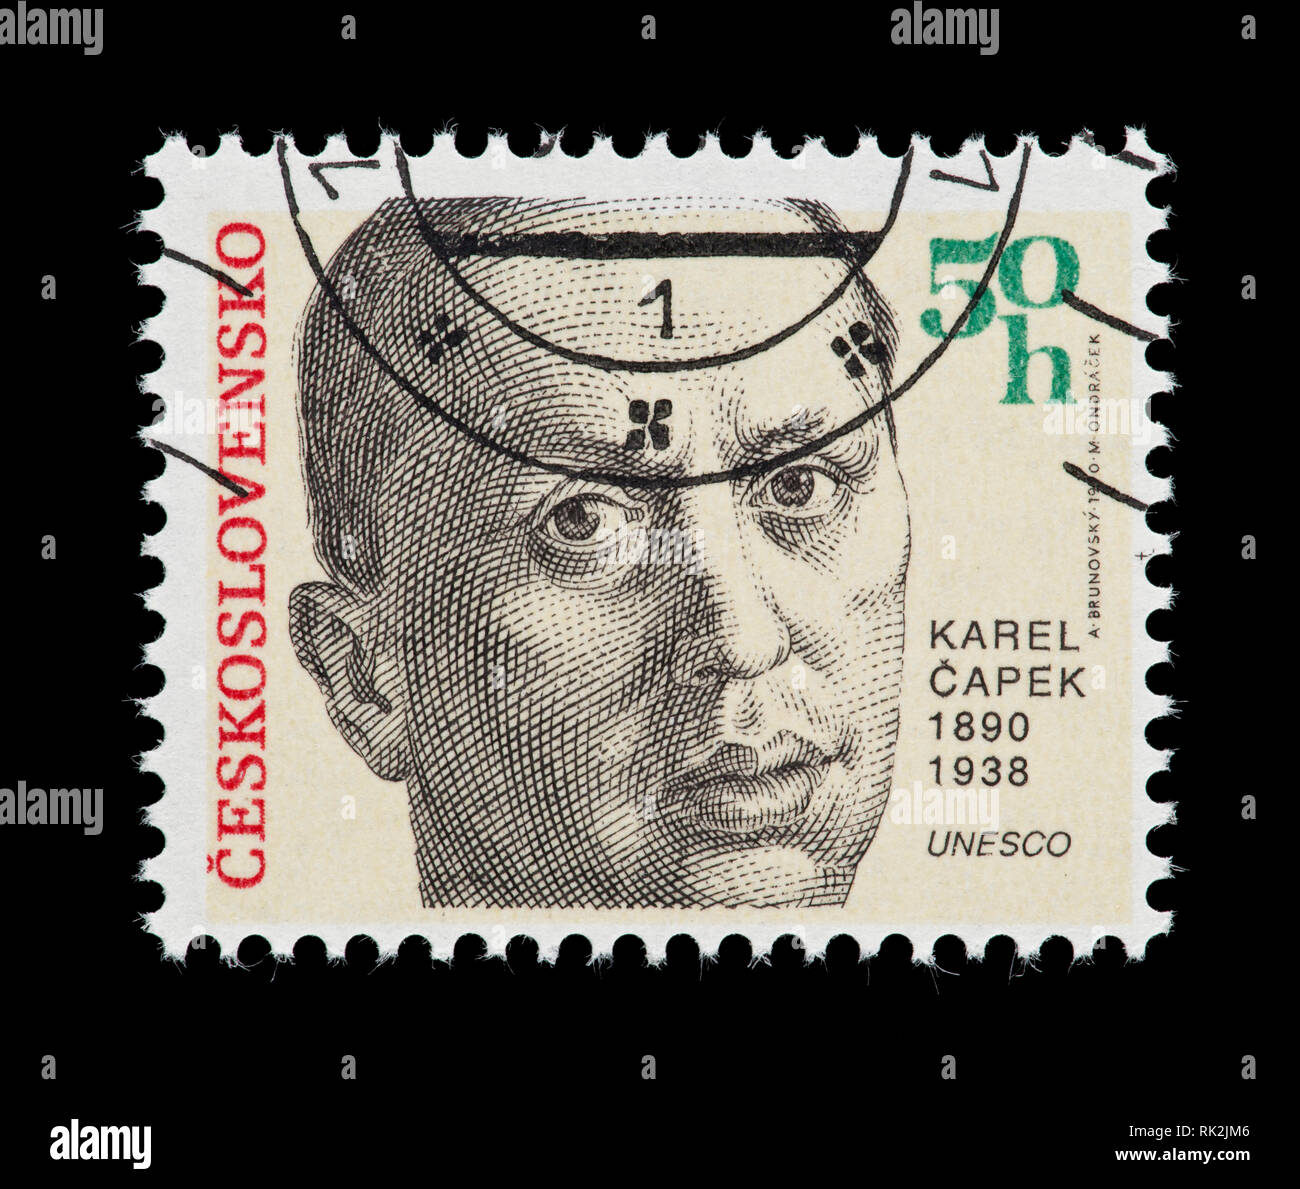 Francobollo dalla Cecoslovacchia raffiguranti Karel Capek, drammaturgo e critico, inventore della parola "robot" Foto Stock